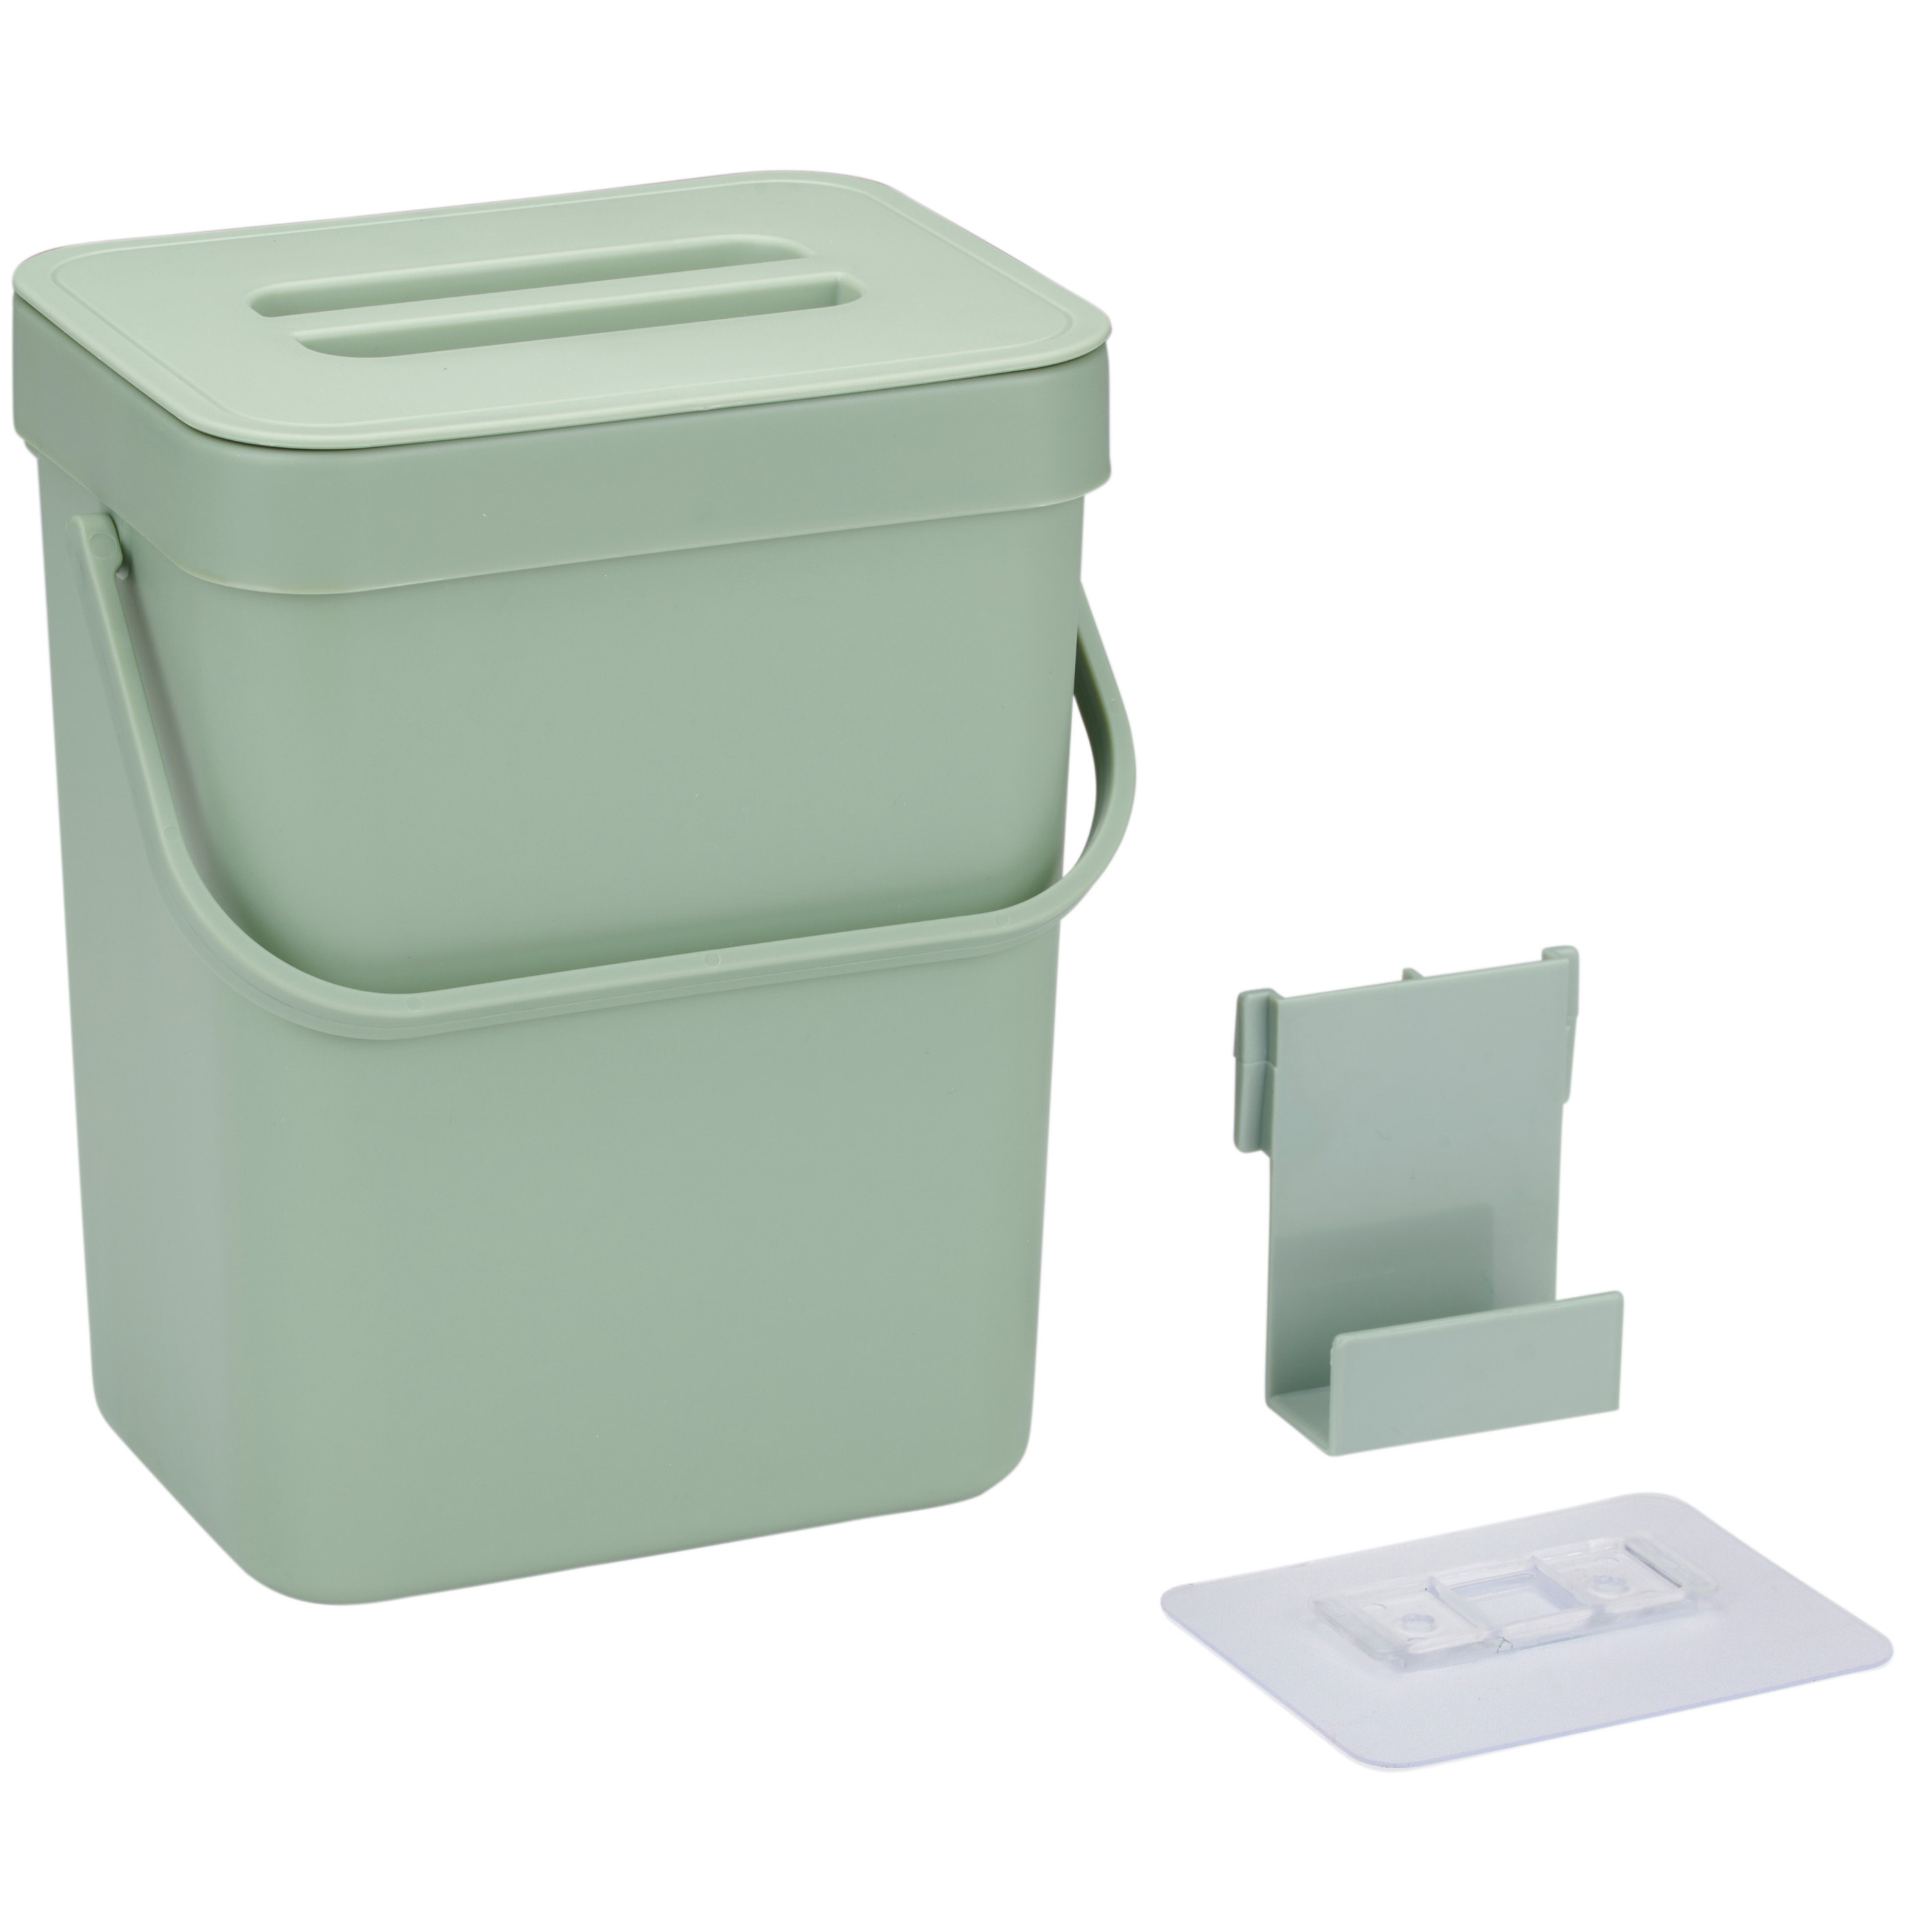 Gft afvalbakje voor aanrecht of aan keuken kastje 5L groen afsluitbaar 24 x 19 x 14 cm